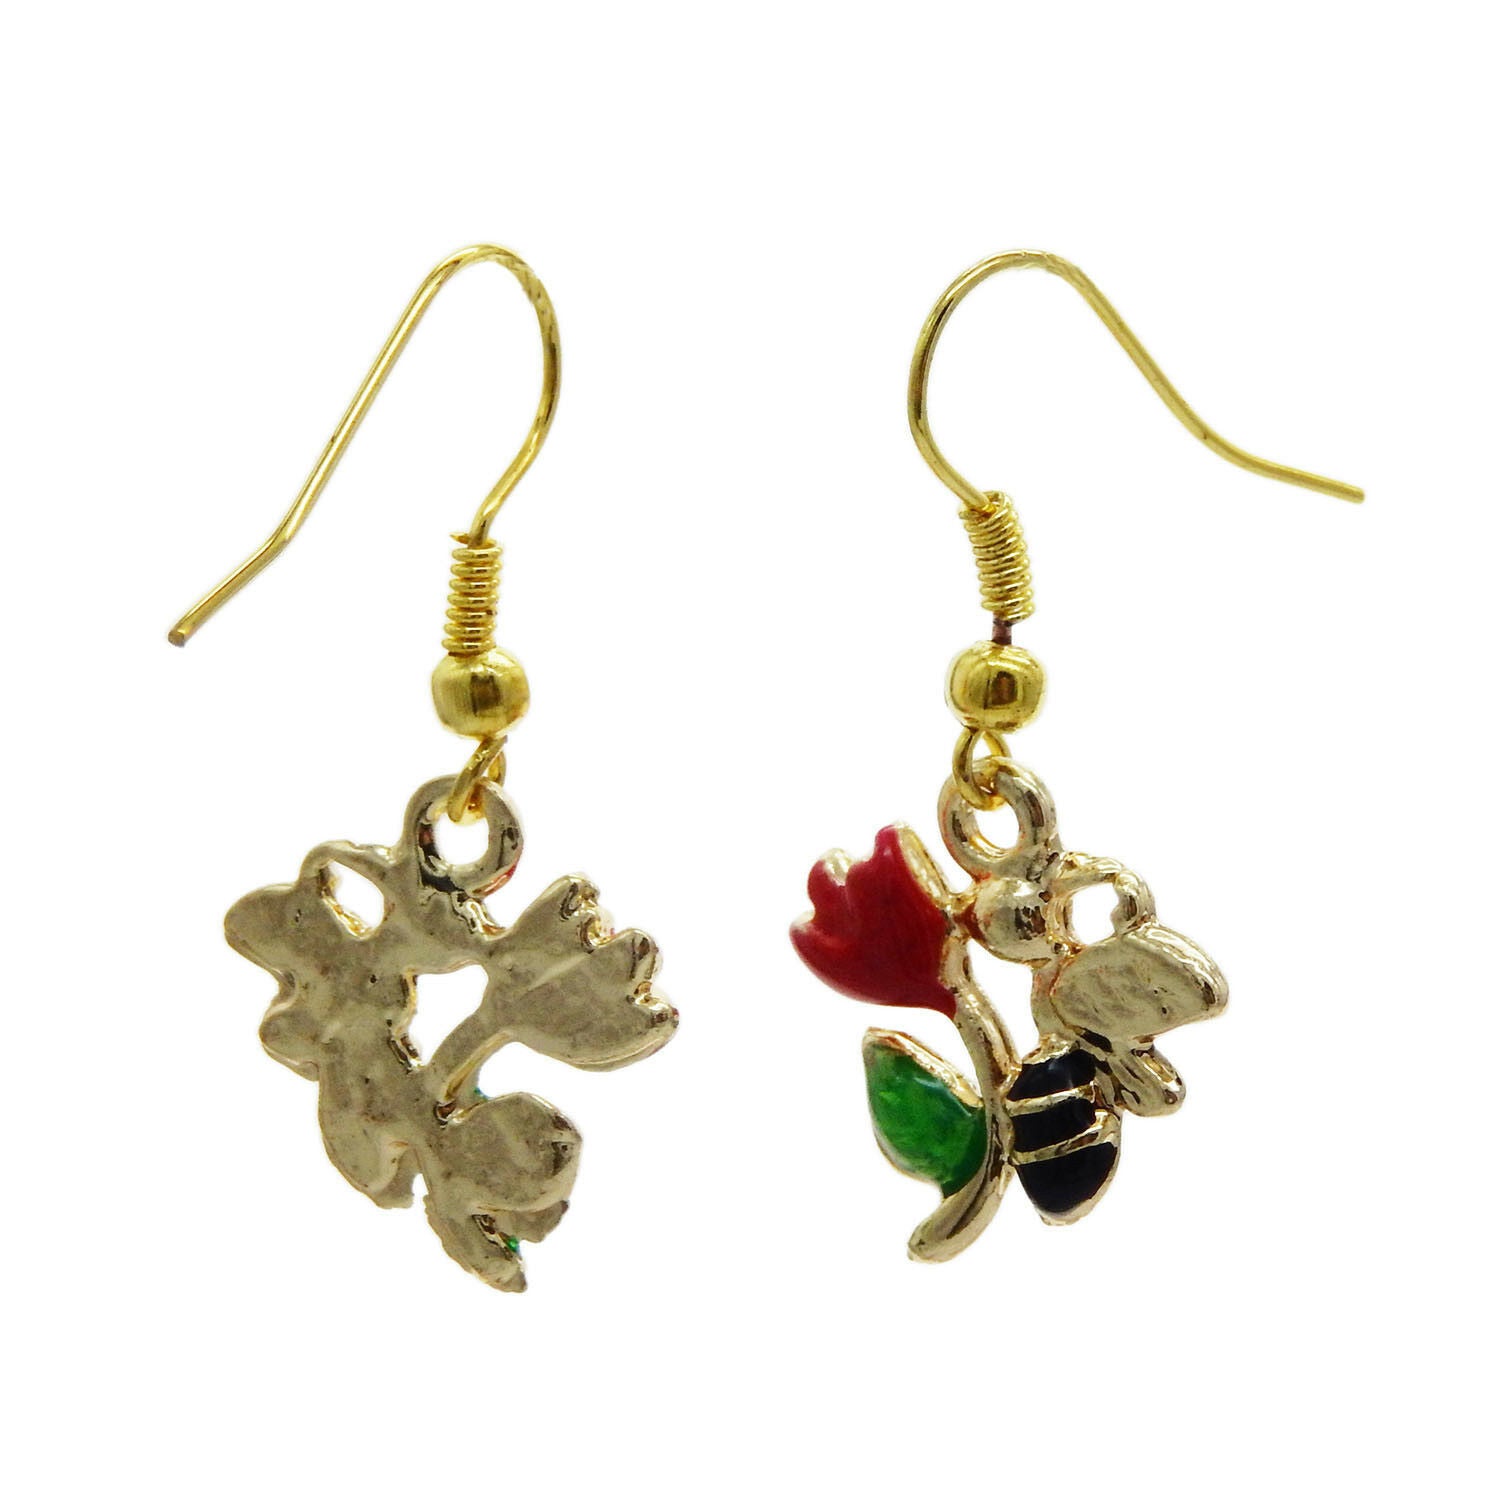 1 Pair Enamel Metal Flower and Honey Bee Charm Dangle Hooks Earrings Jewelry